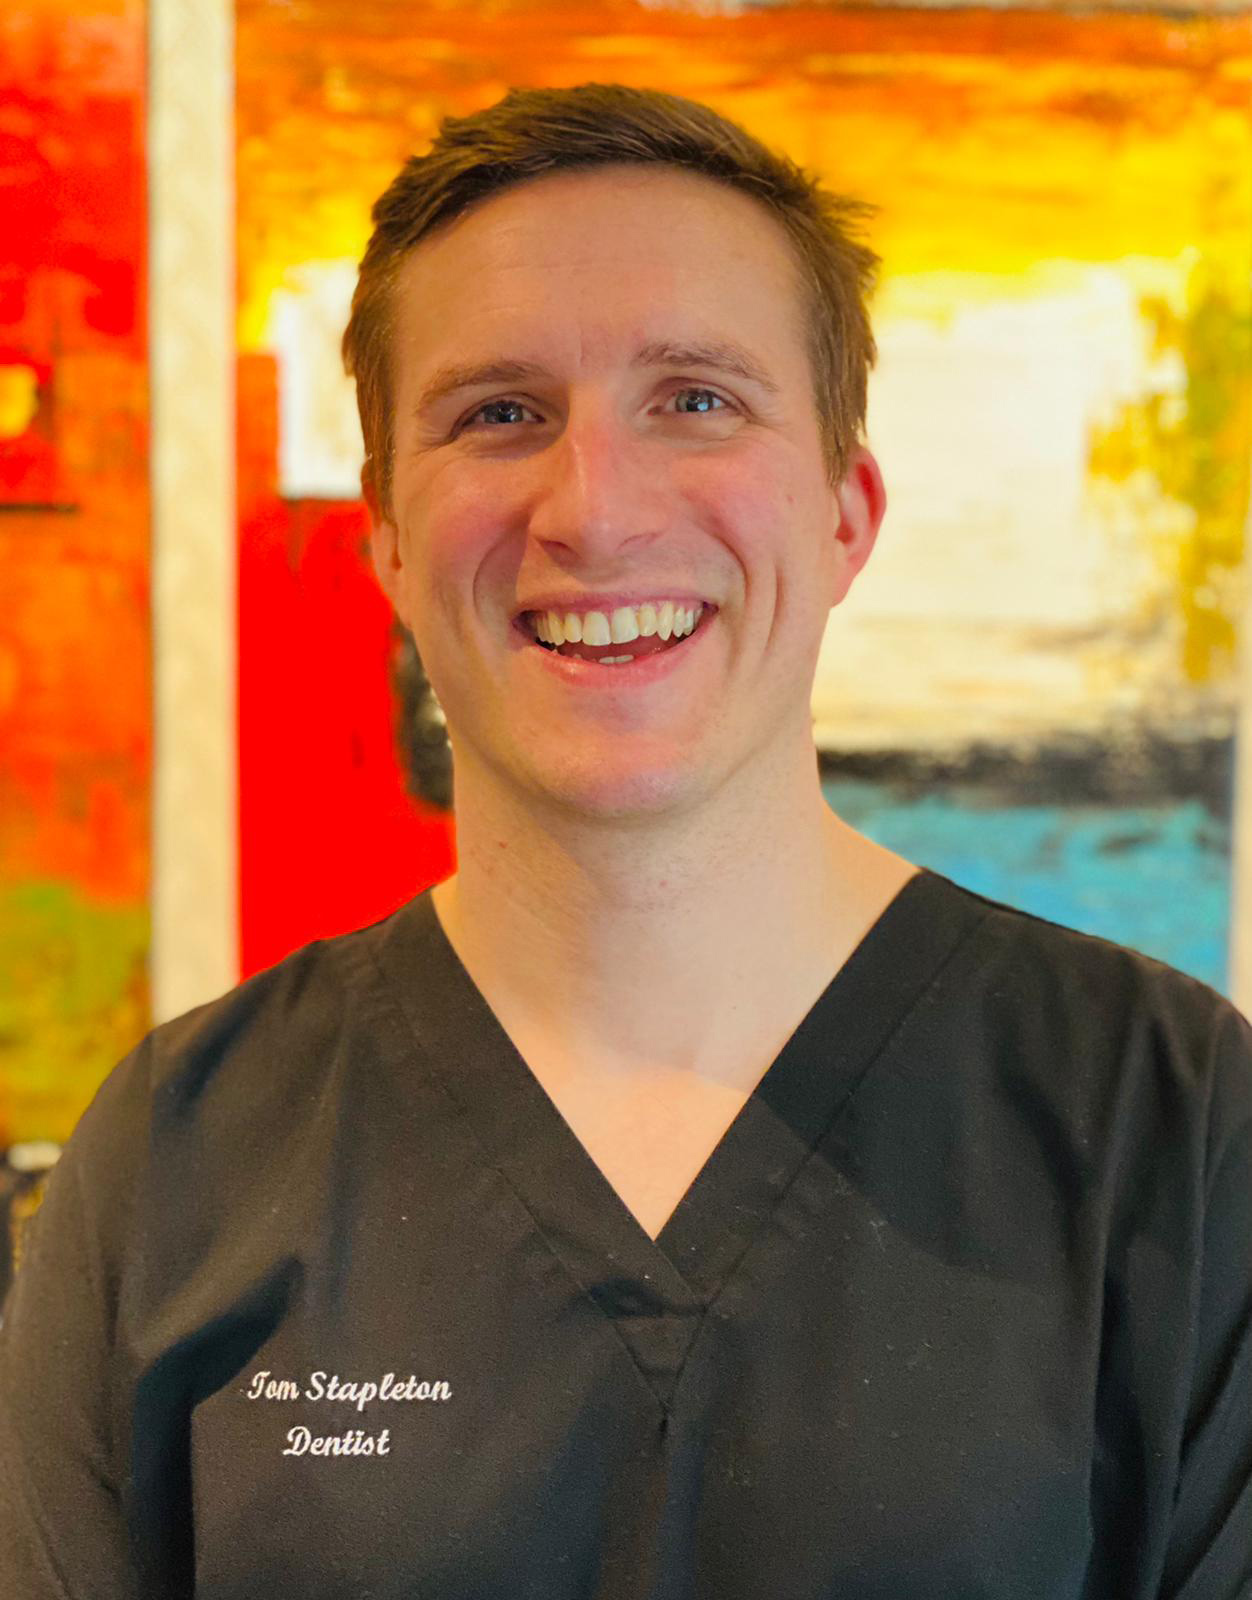 Tom Stapleton - Dentist